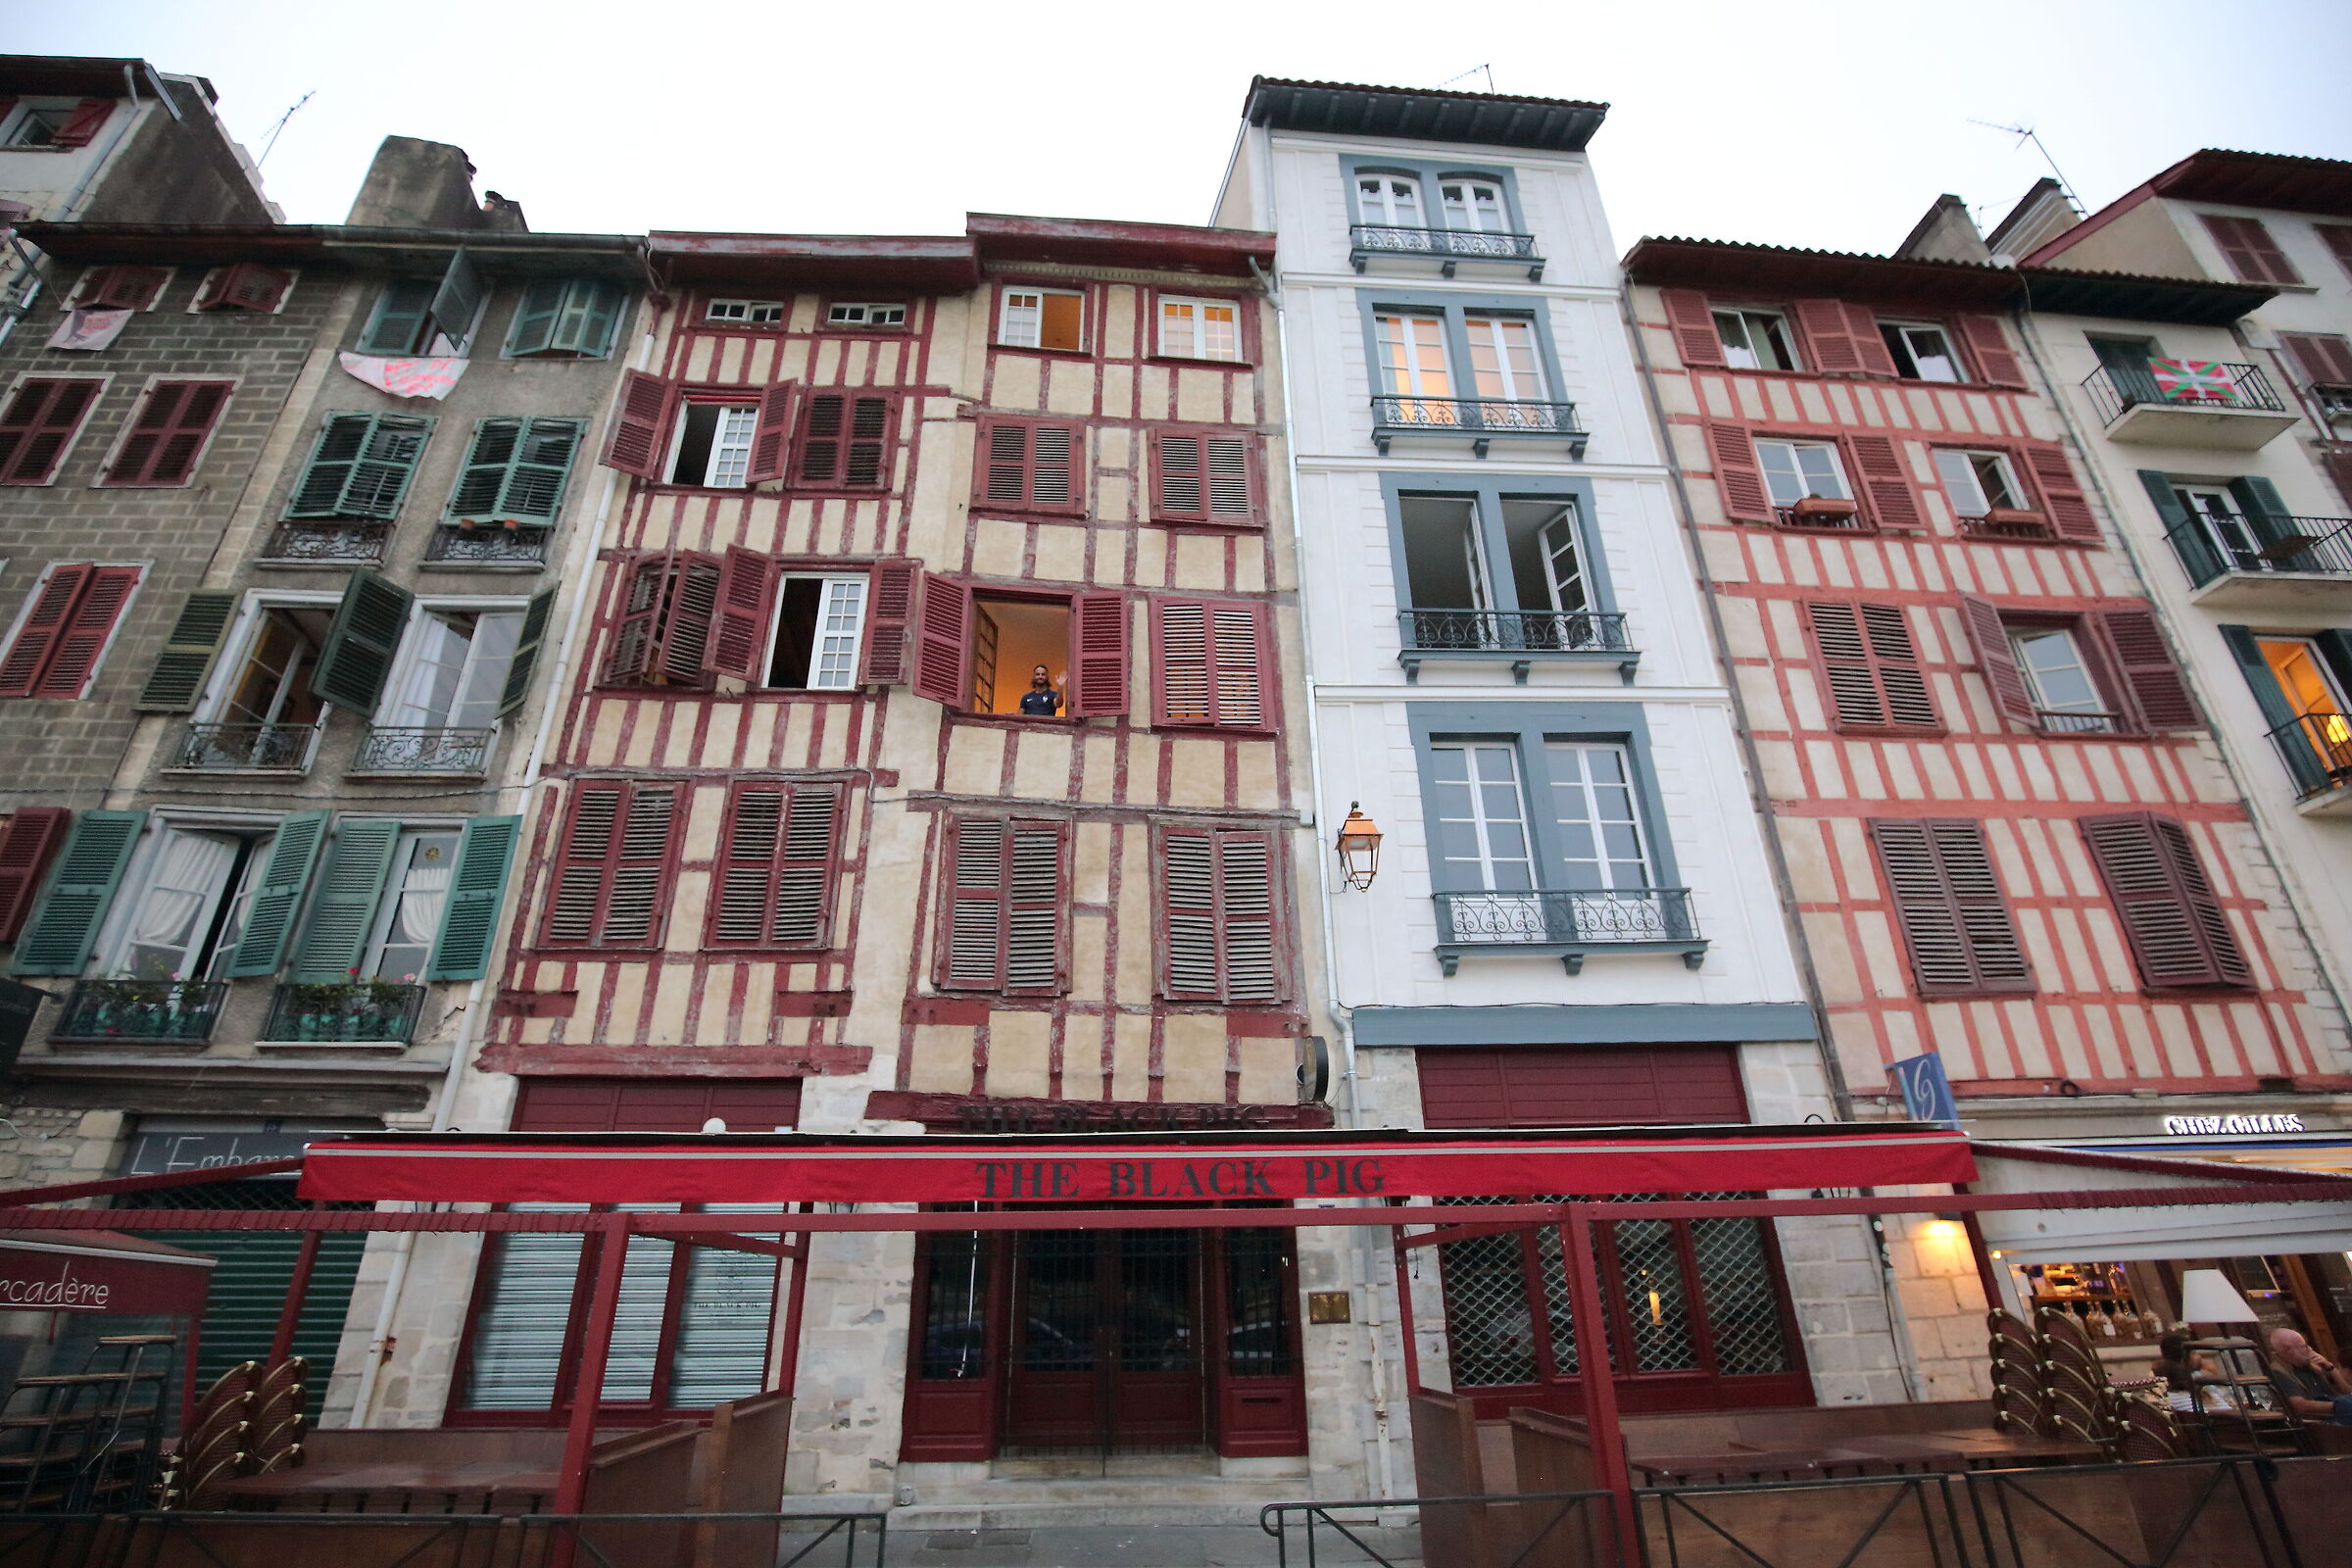 The facades of Bayonne ...